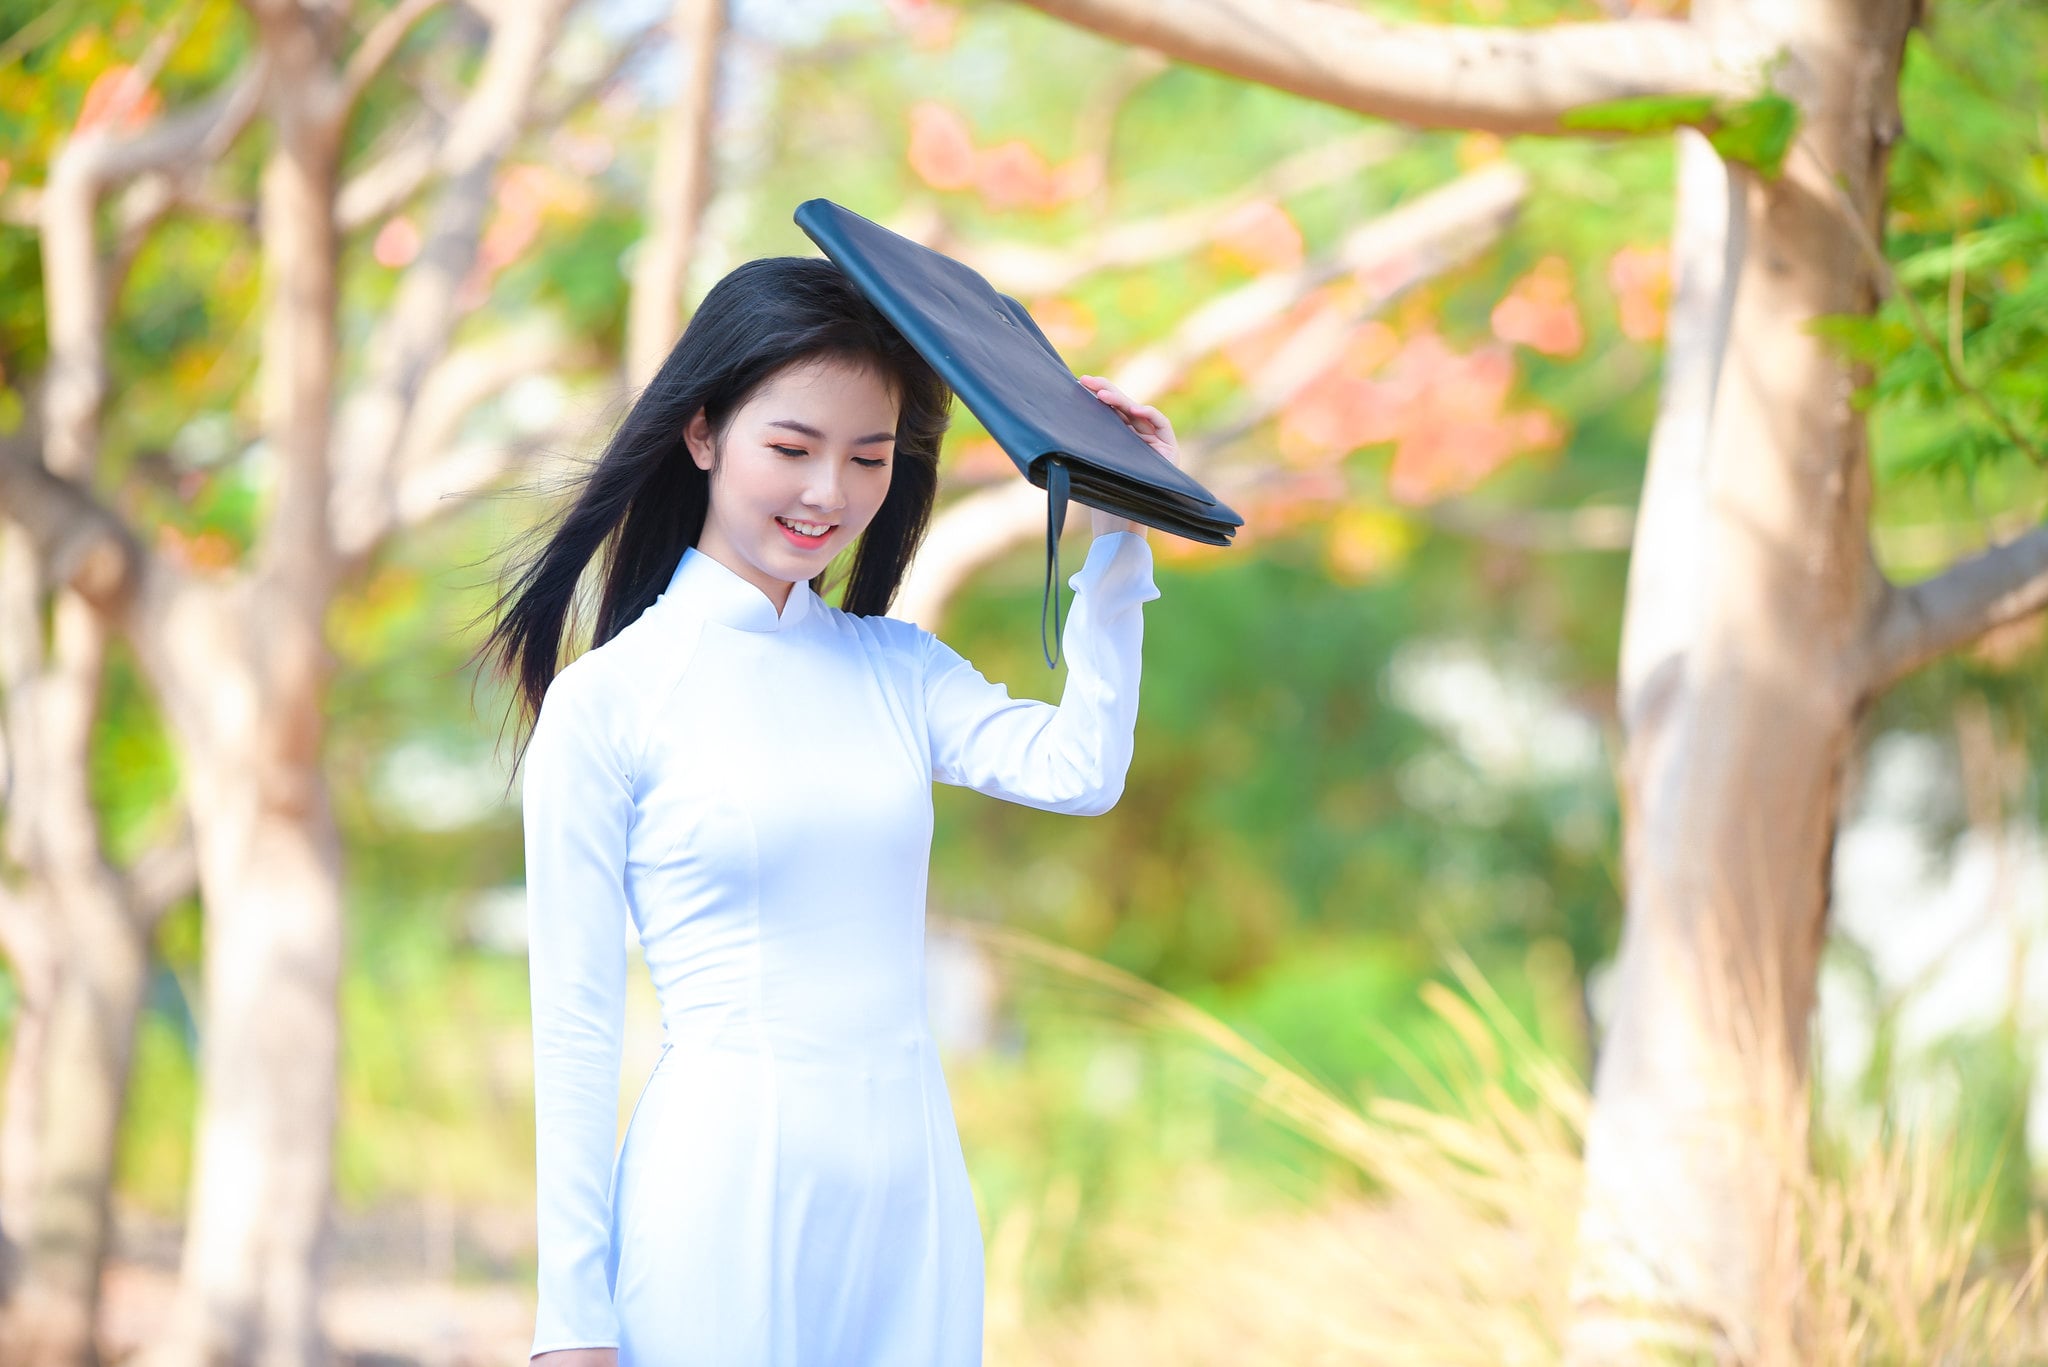 Góc ảnh áo dài nữ sinh Việt Nam đẹp dịu dàng, thướt tha số 1